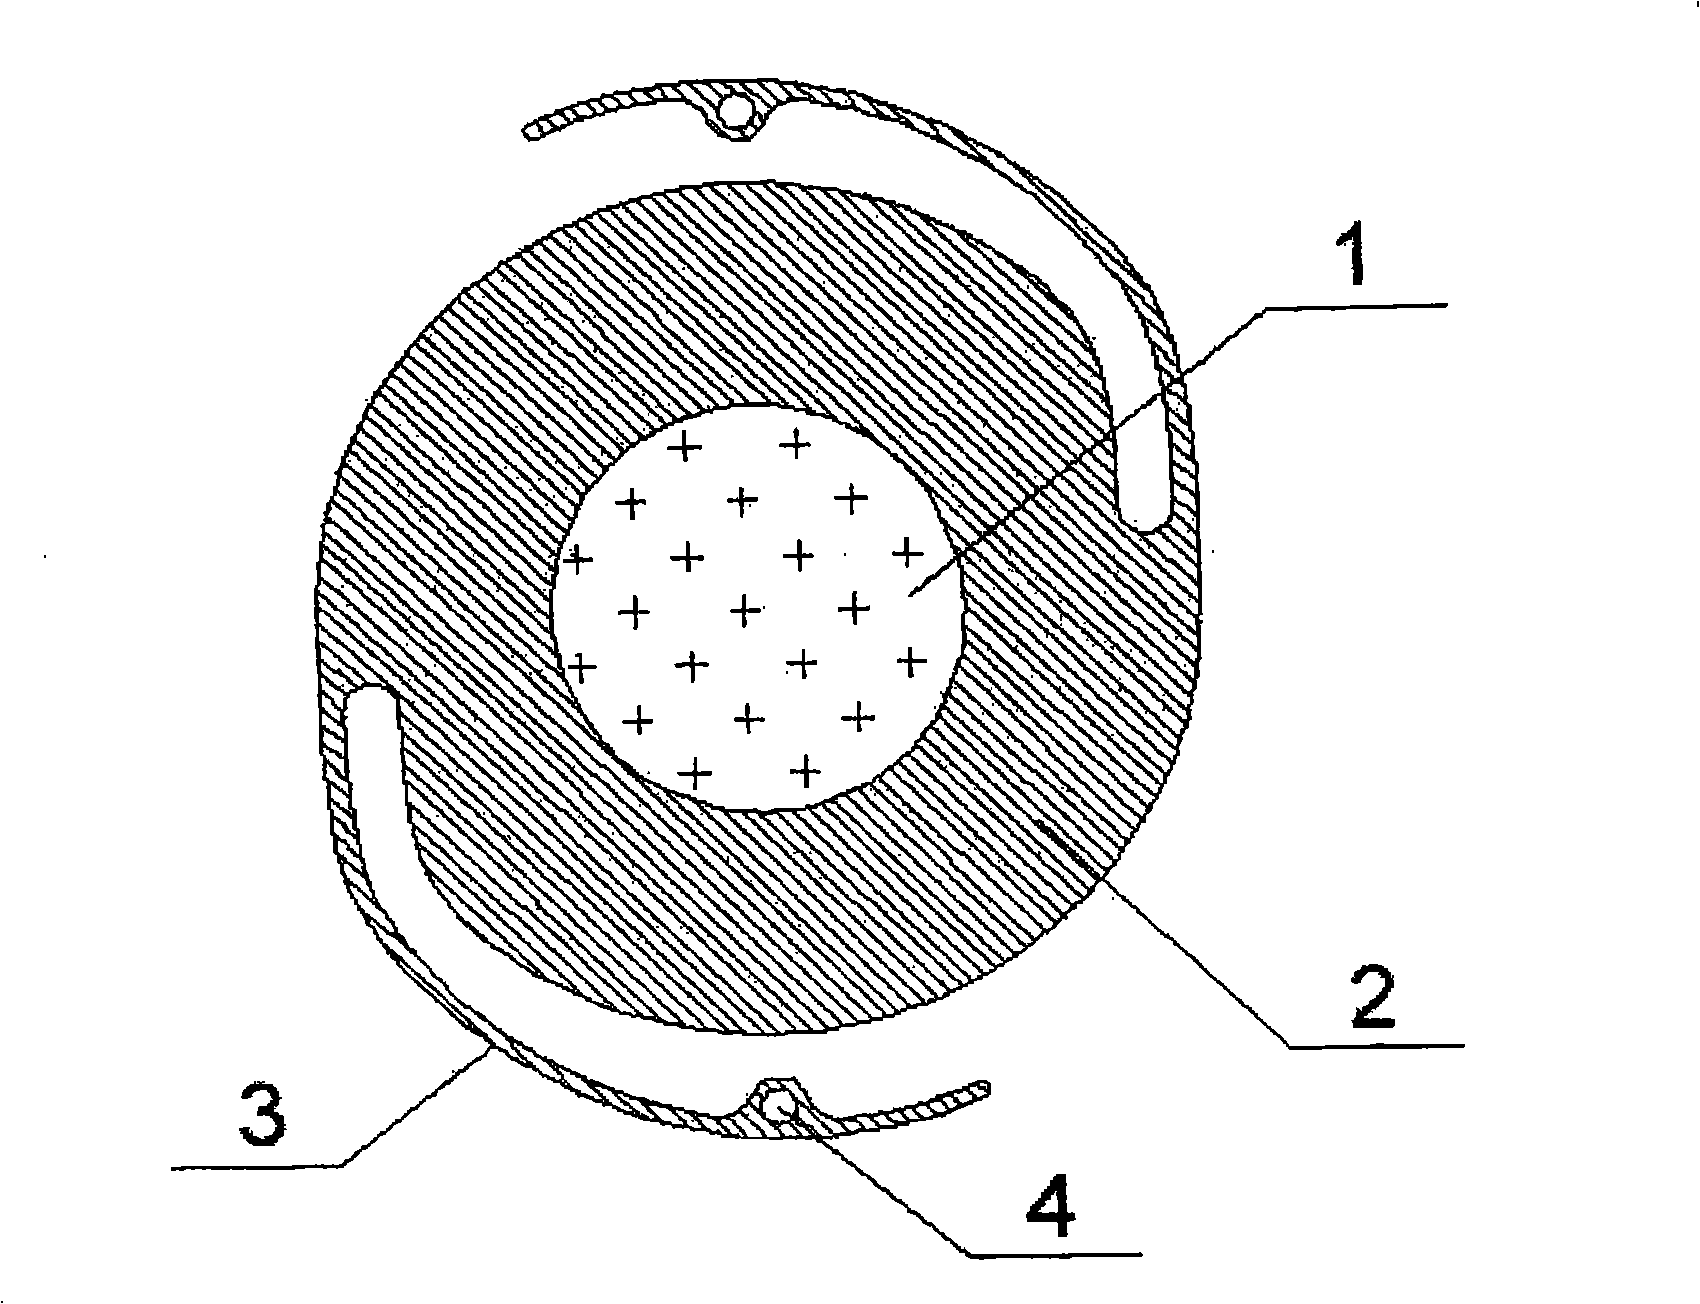 Intraocular lens with iris diaphragm